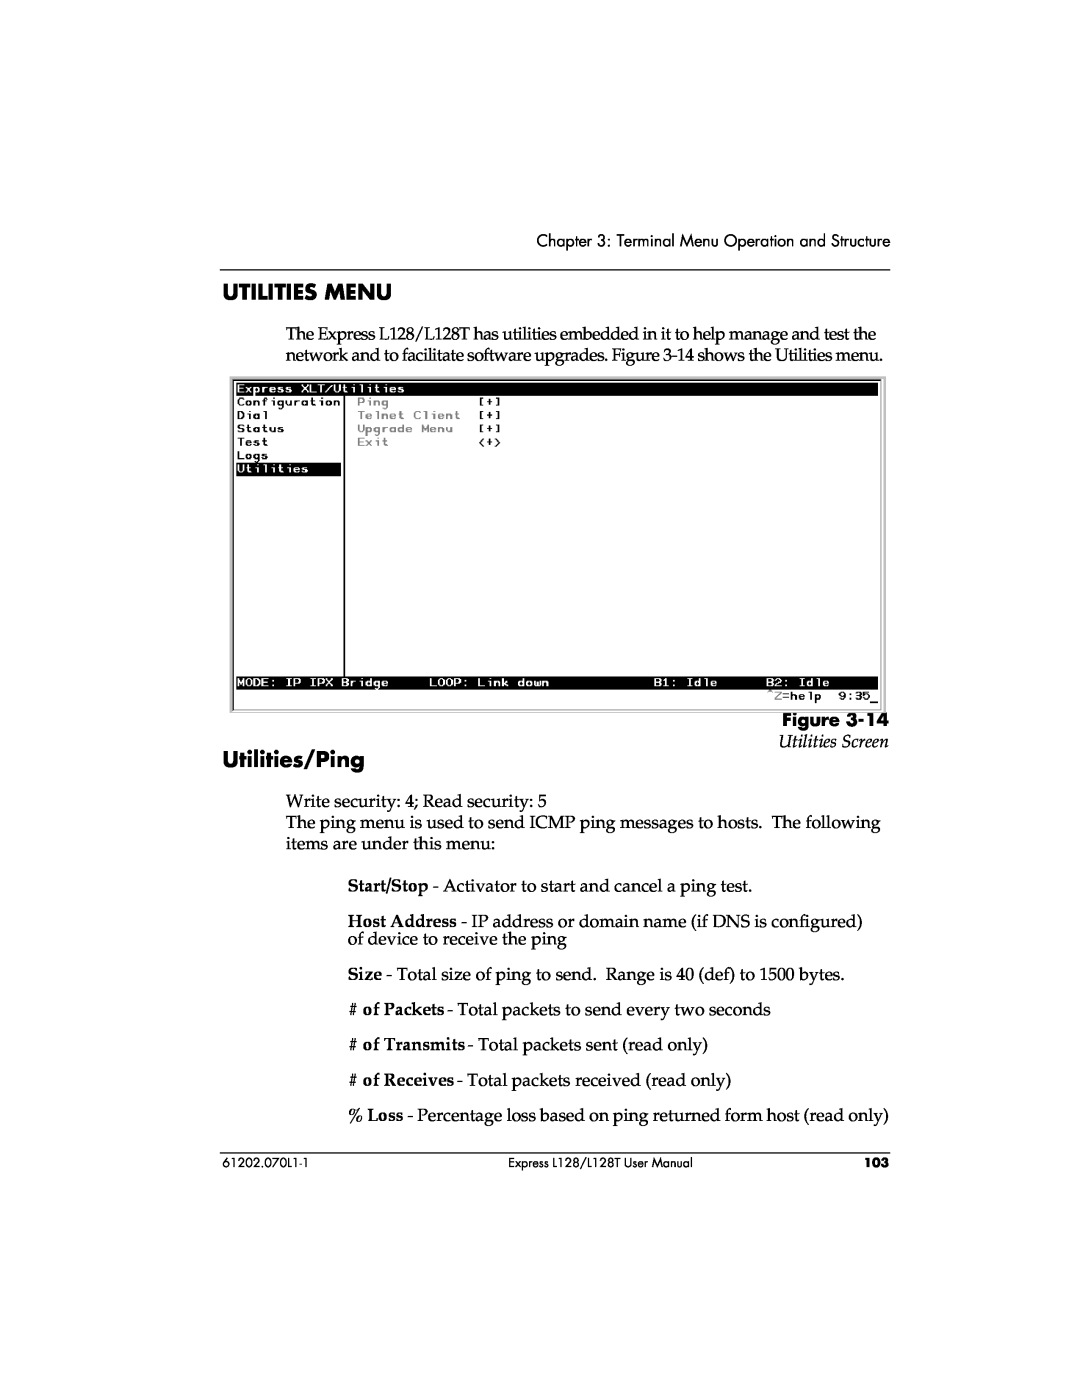 ADTRAN L128T user manual Utilities Menu, Utilities/Ping, Utilities Screen 